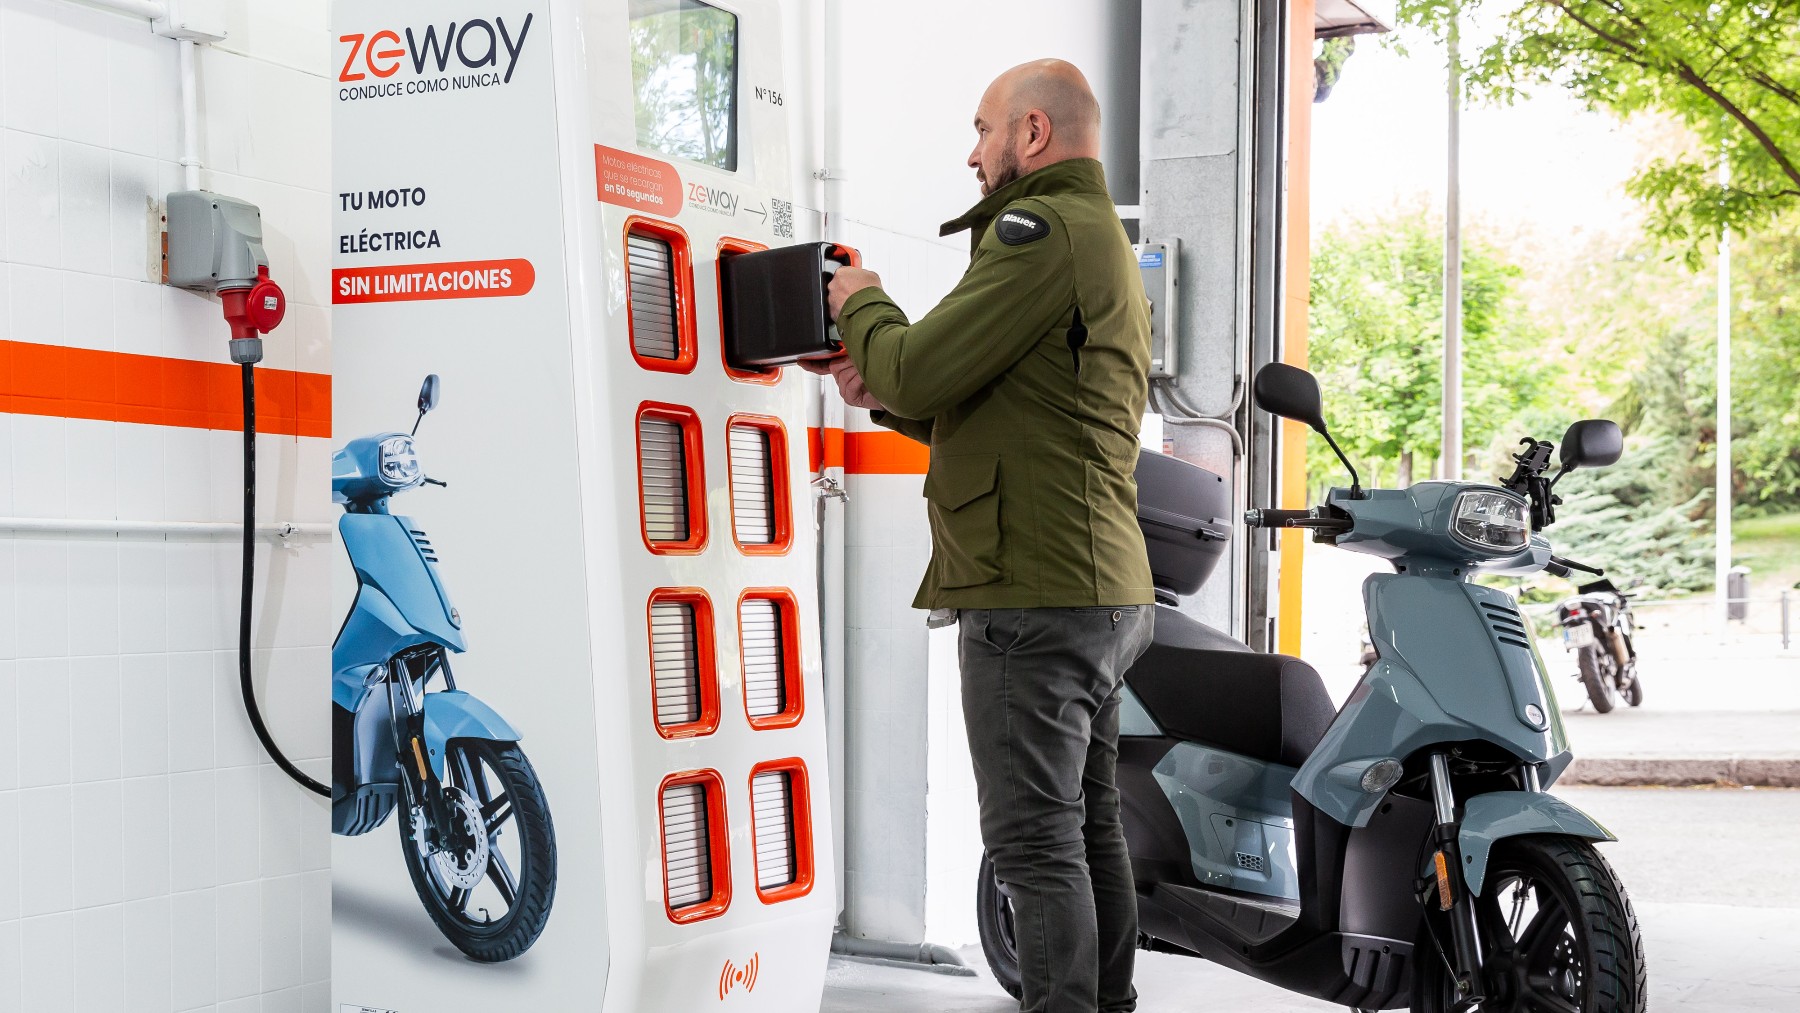 La operadora llegará a Madrid con estaciones de intercambio de baterías para sus motos eléctricas